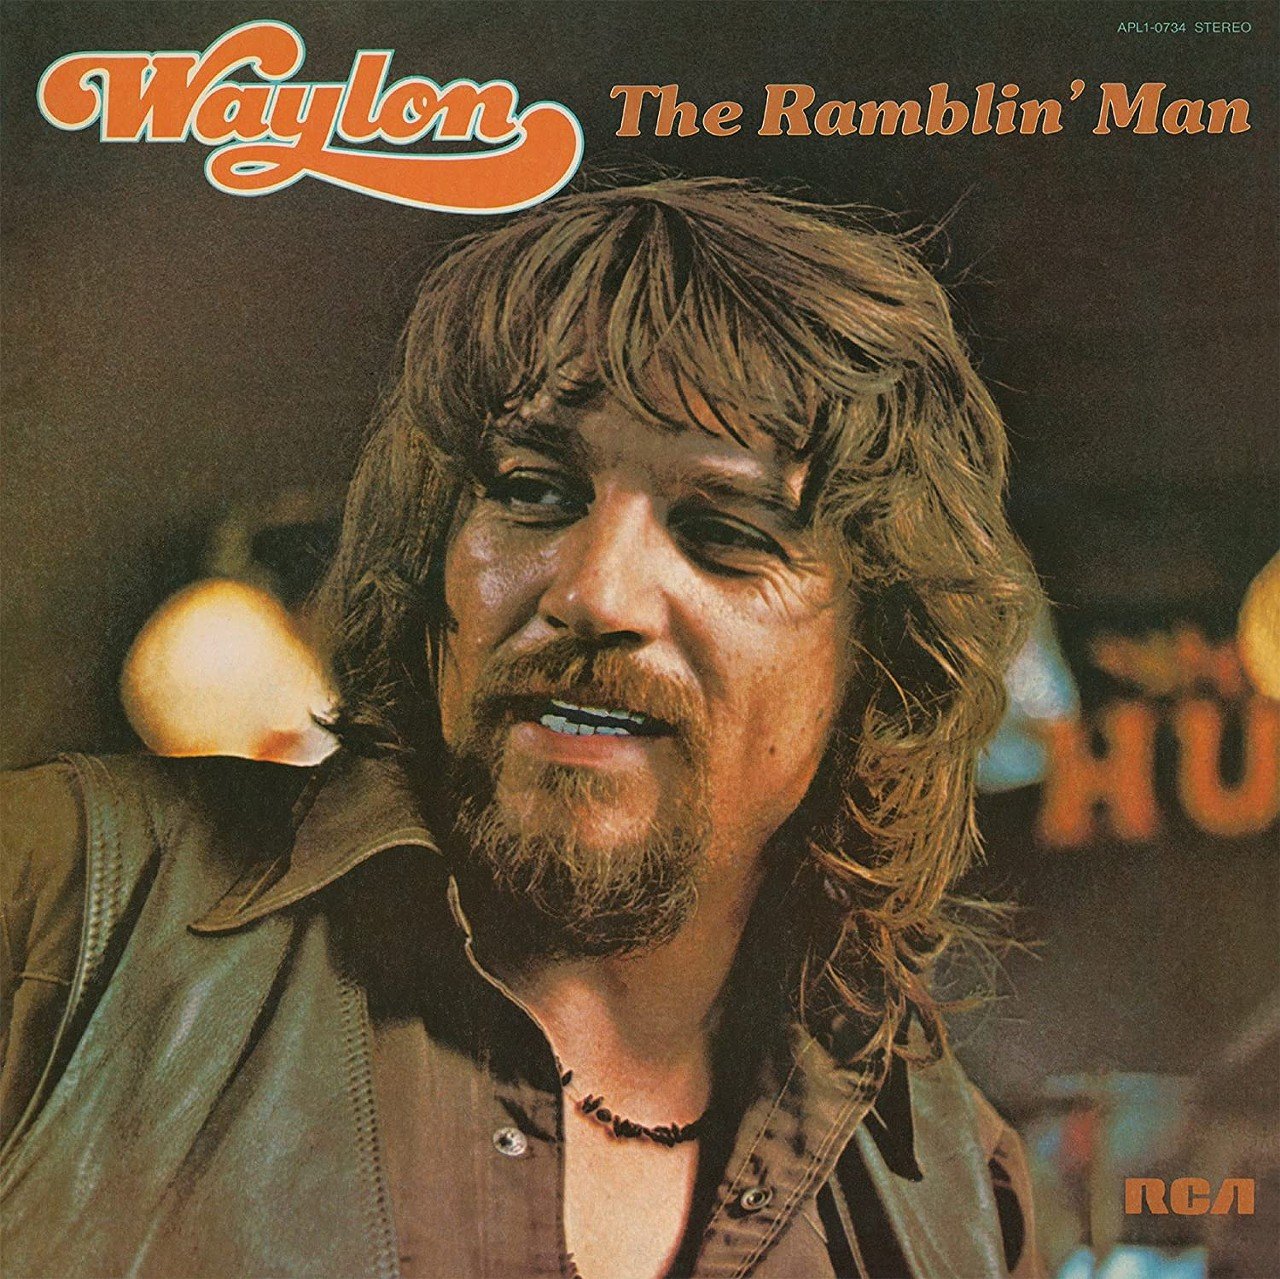 "I’m a Ramblin’ Man" by Waylon Jennings
Got a girl in Cincinnati
Waitin' where the Ohio River flows